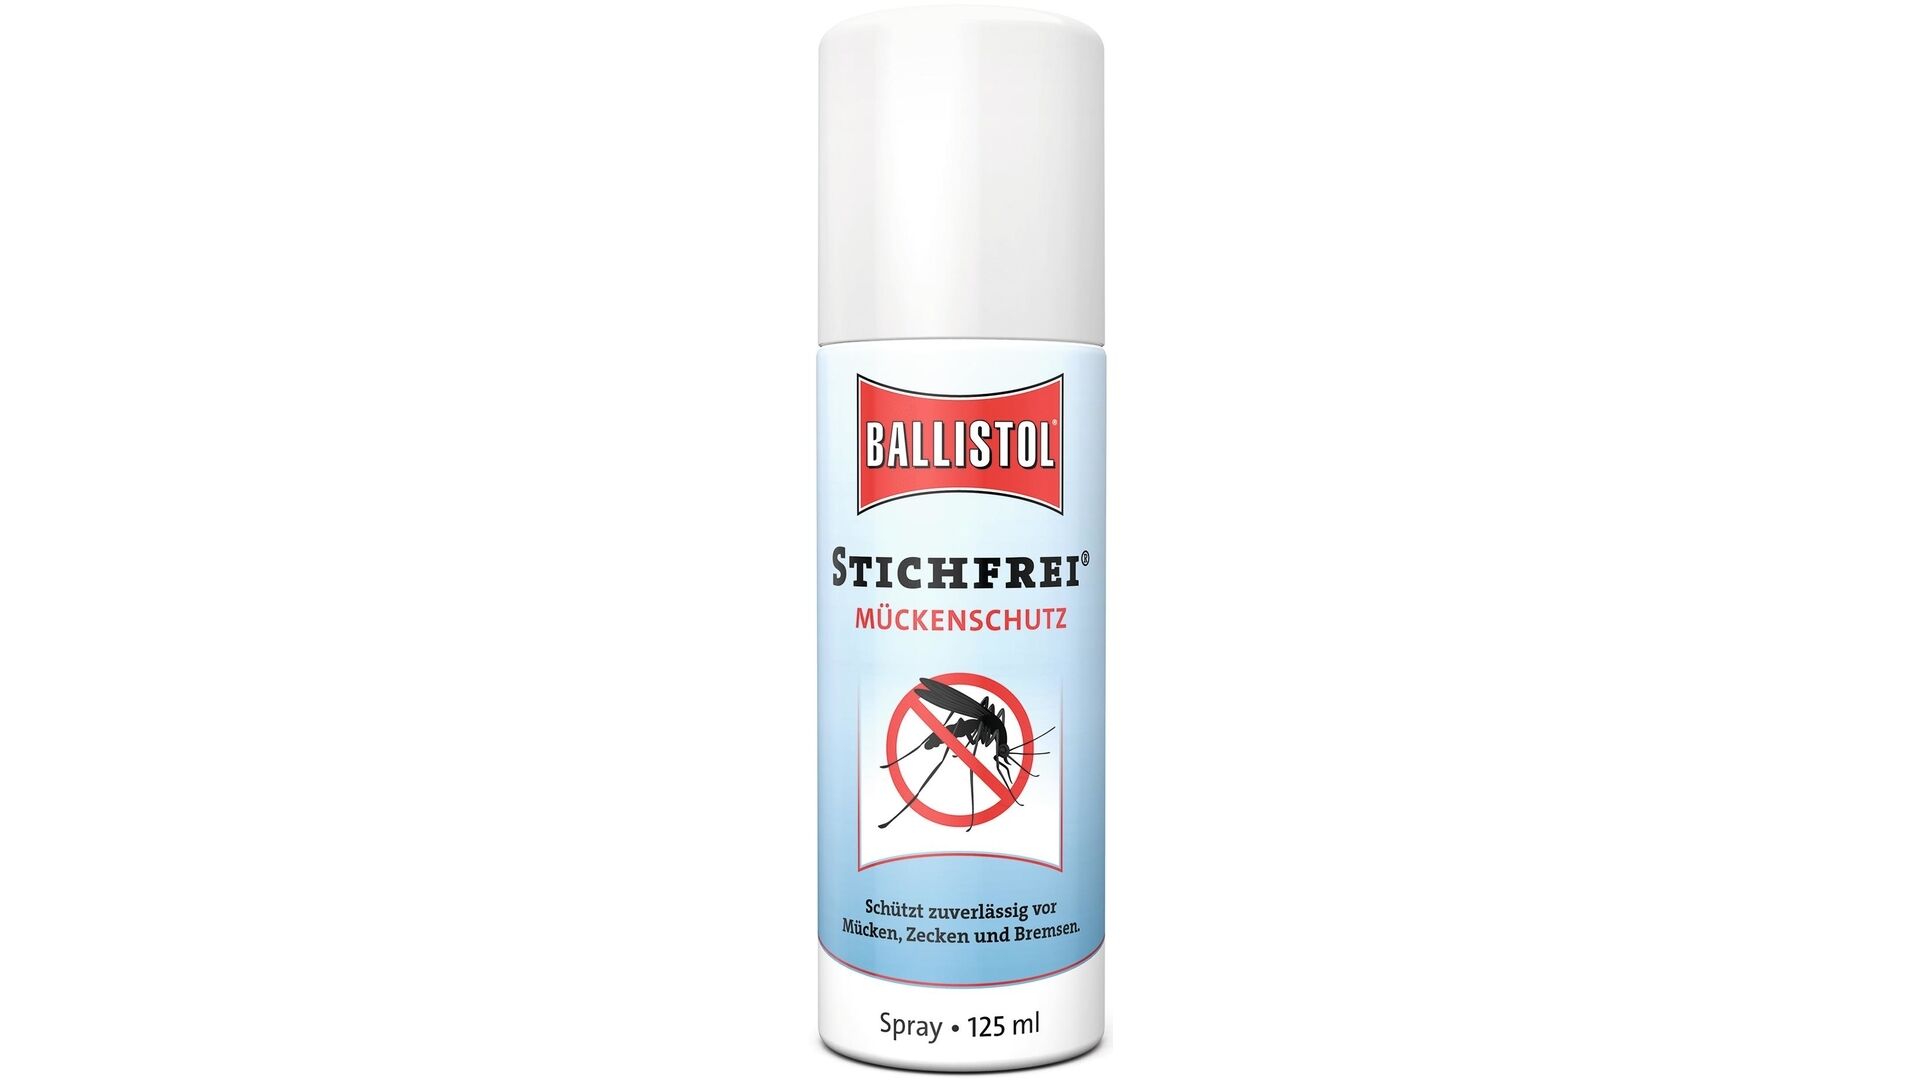 Ballistol Mückenschutz Stichfrei